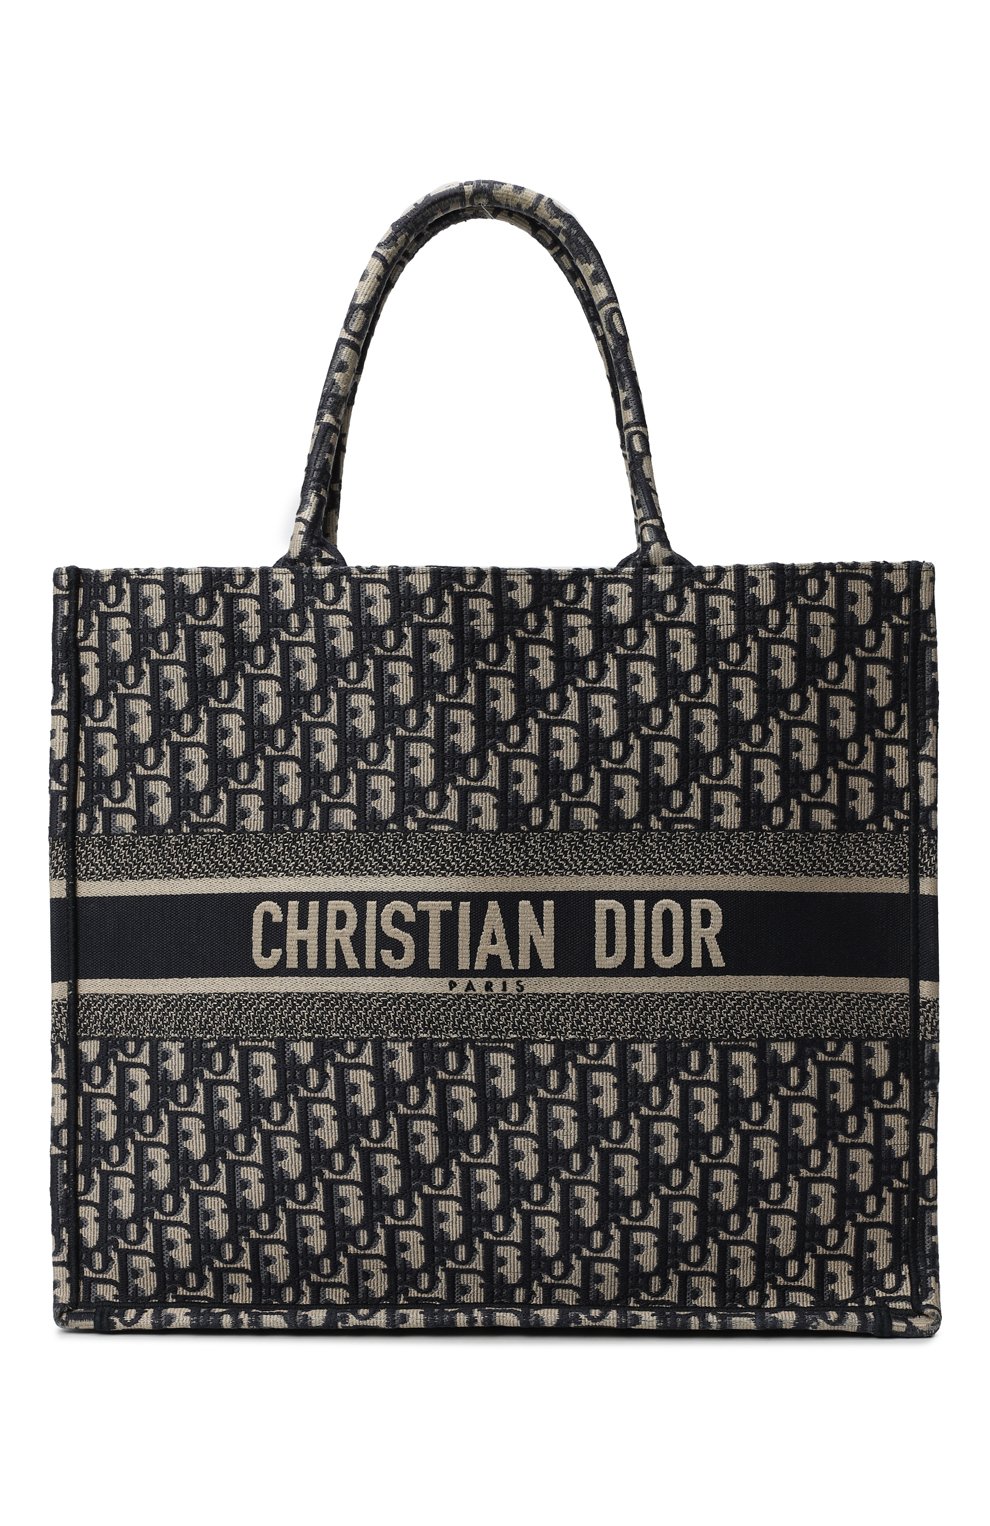 Кристиан диор сумка Tote. Сумка диор book Tote m1286. Сумка-тоут Christian Dior book Tote. Сумка шоппер Кристиан диор.